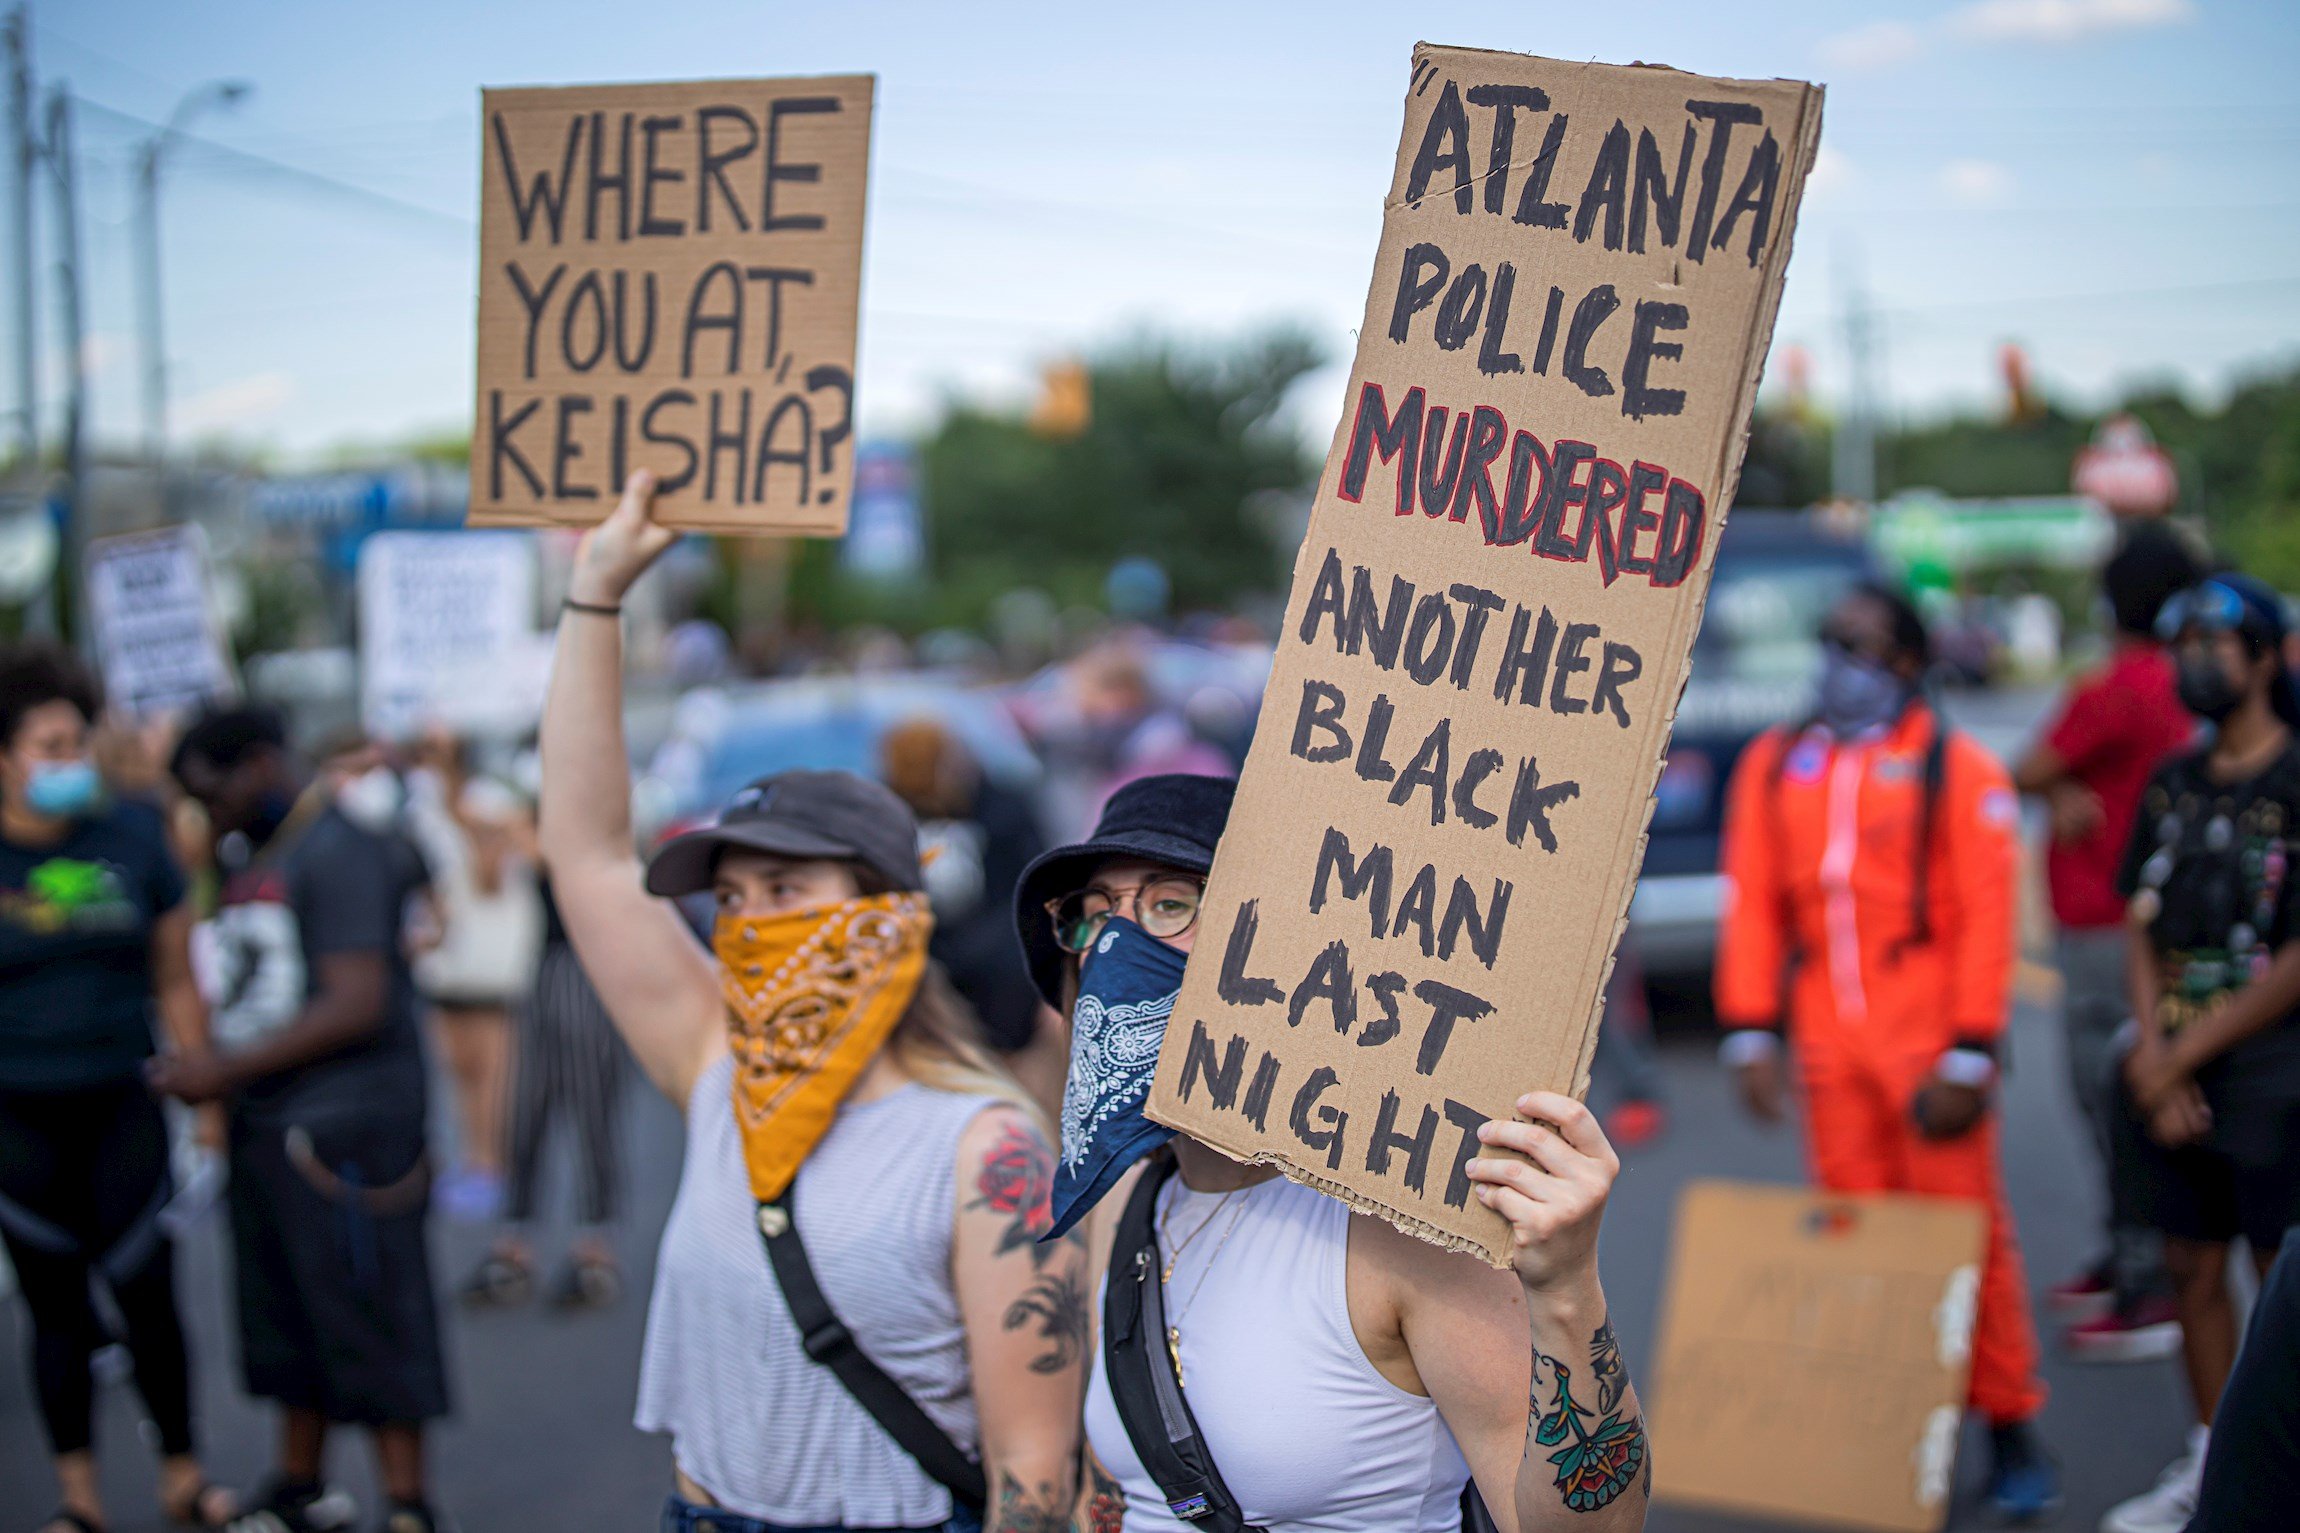 La policia mata un altre afroamericà als EUA: tornen les protestes